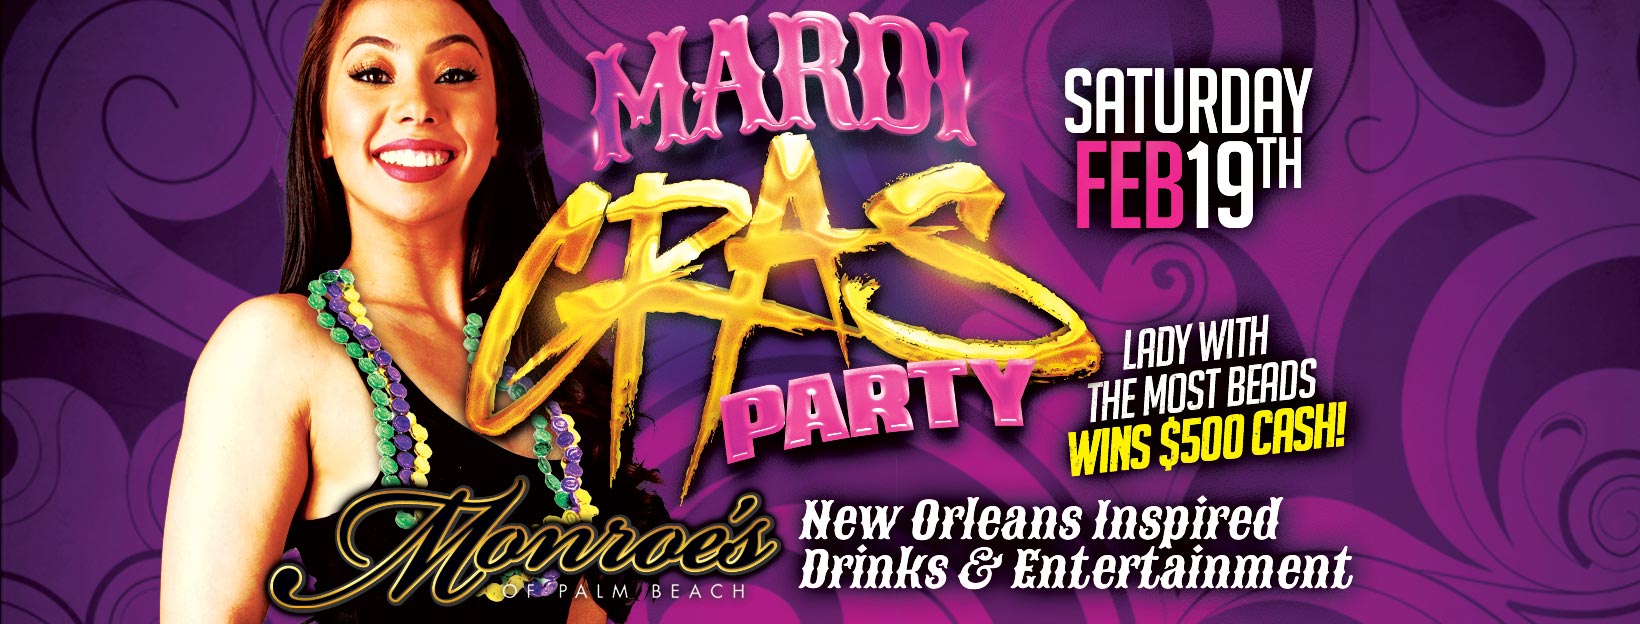 Monroes Palm Beach Mardi Gras Party Feb 19th